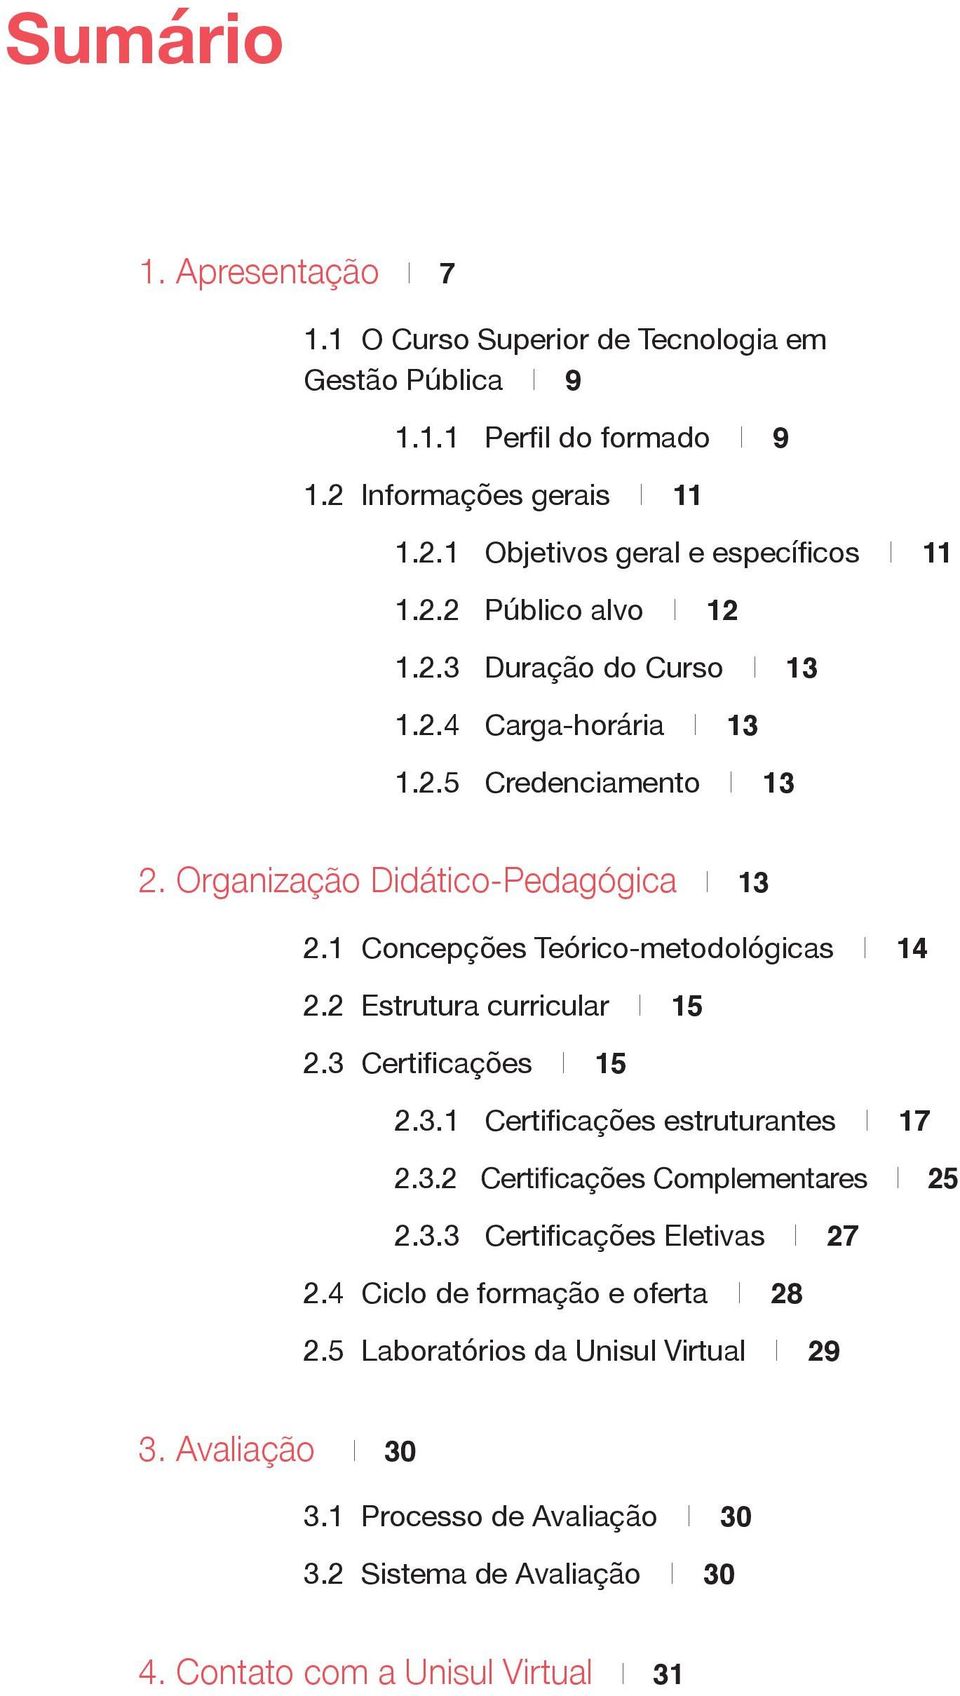 1 Concepções Teórico-metodológicas I 14 2.2 Estrutura curricular I 15 2.3 Certificações I 15 2.3.1 Certificações estruturantes I 17 2.3.2 Certificações Complementares I 25 2.3.3 Certificações Eletivas I 27 2.